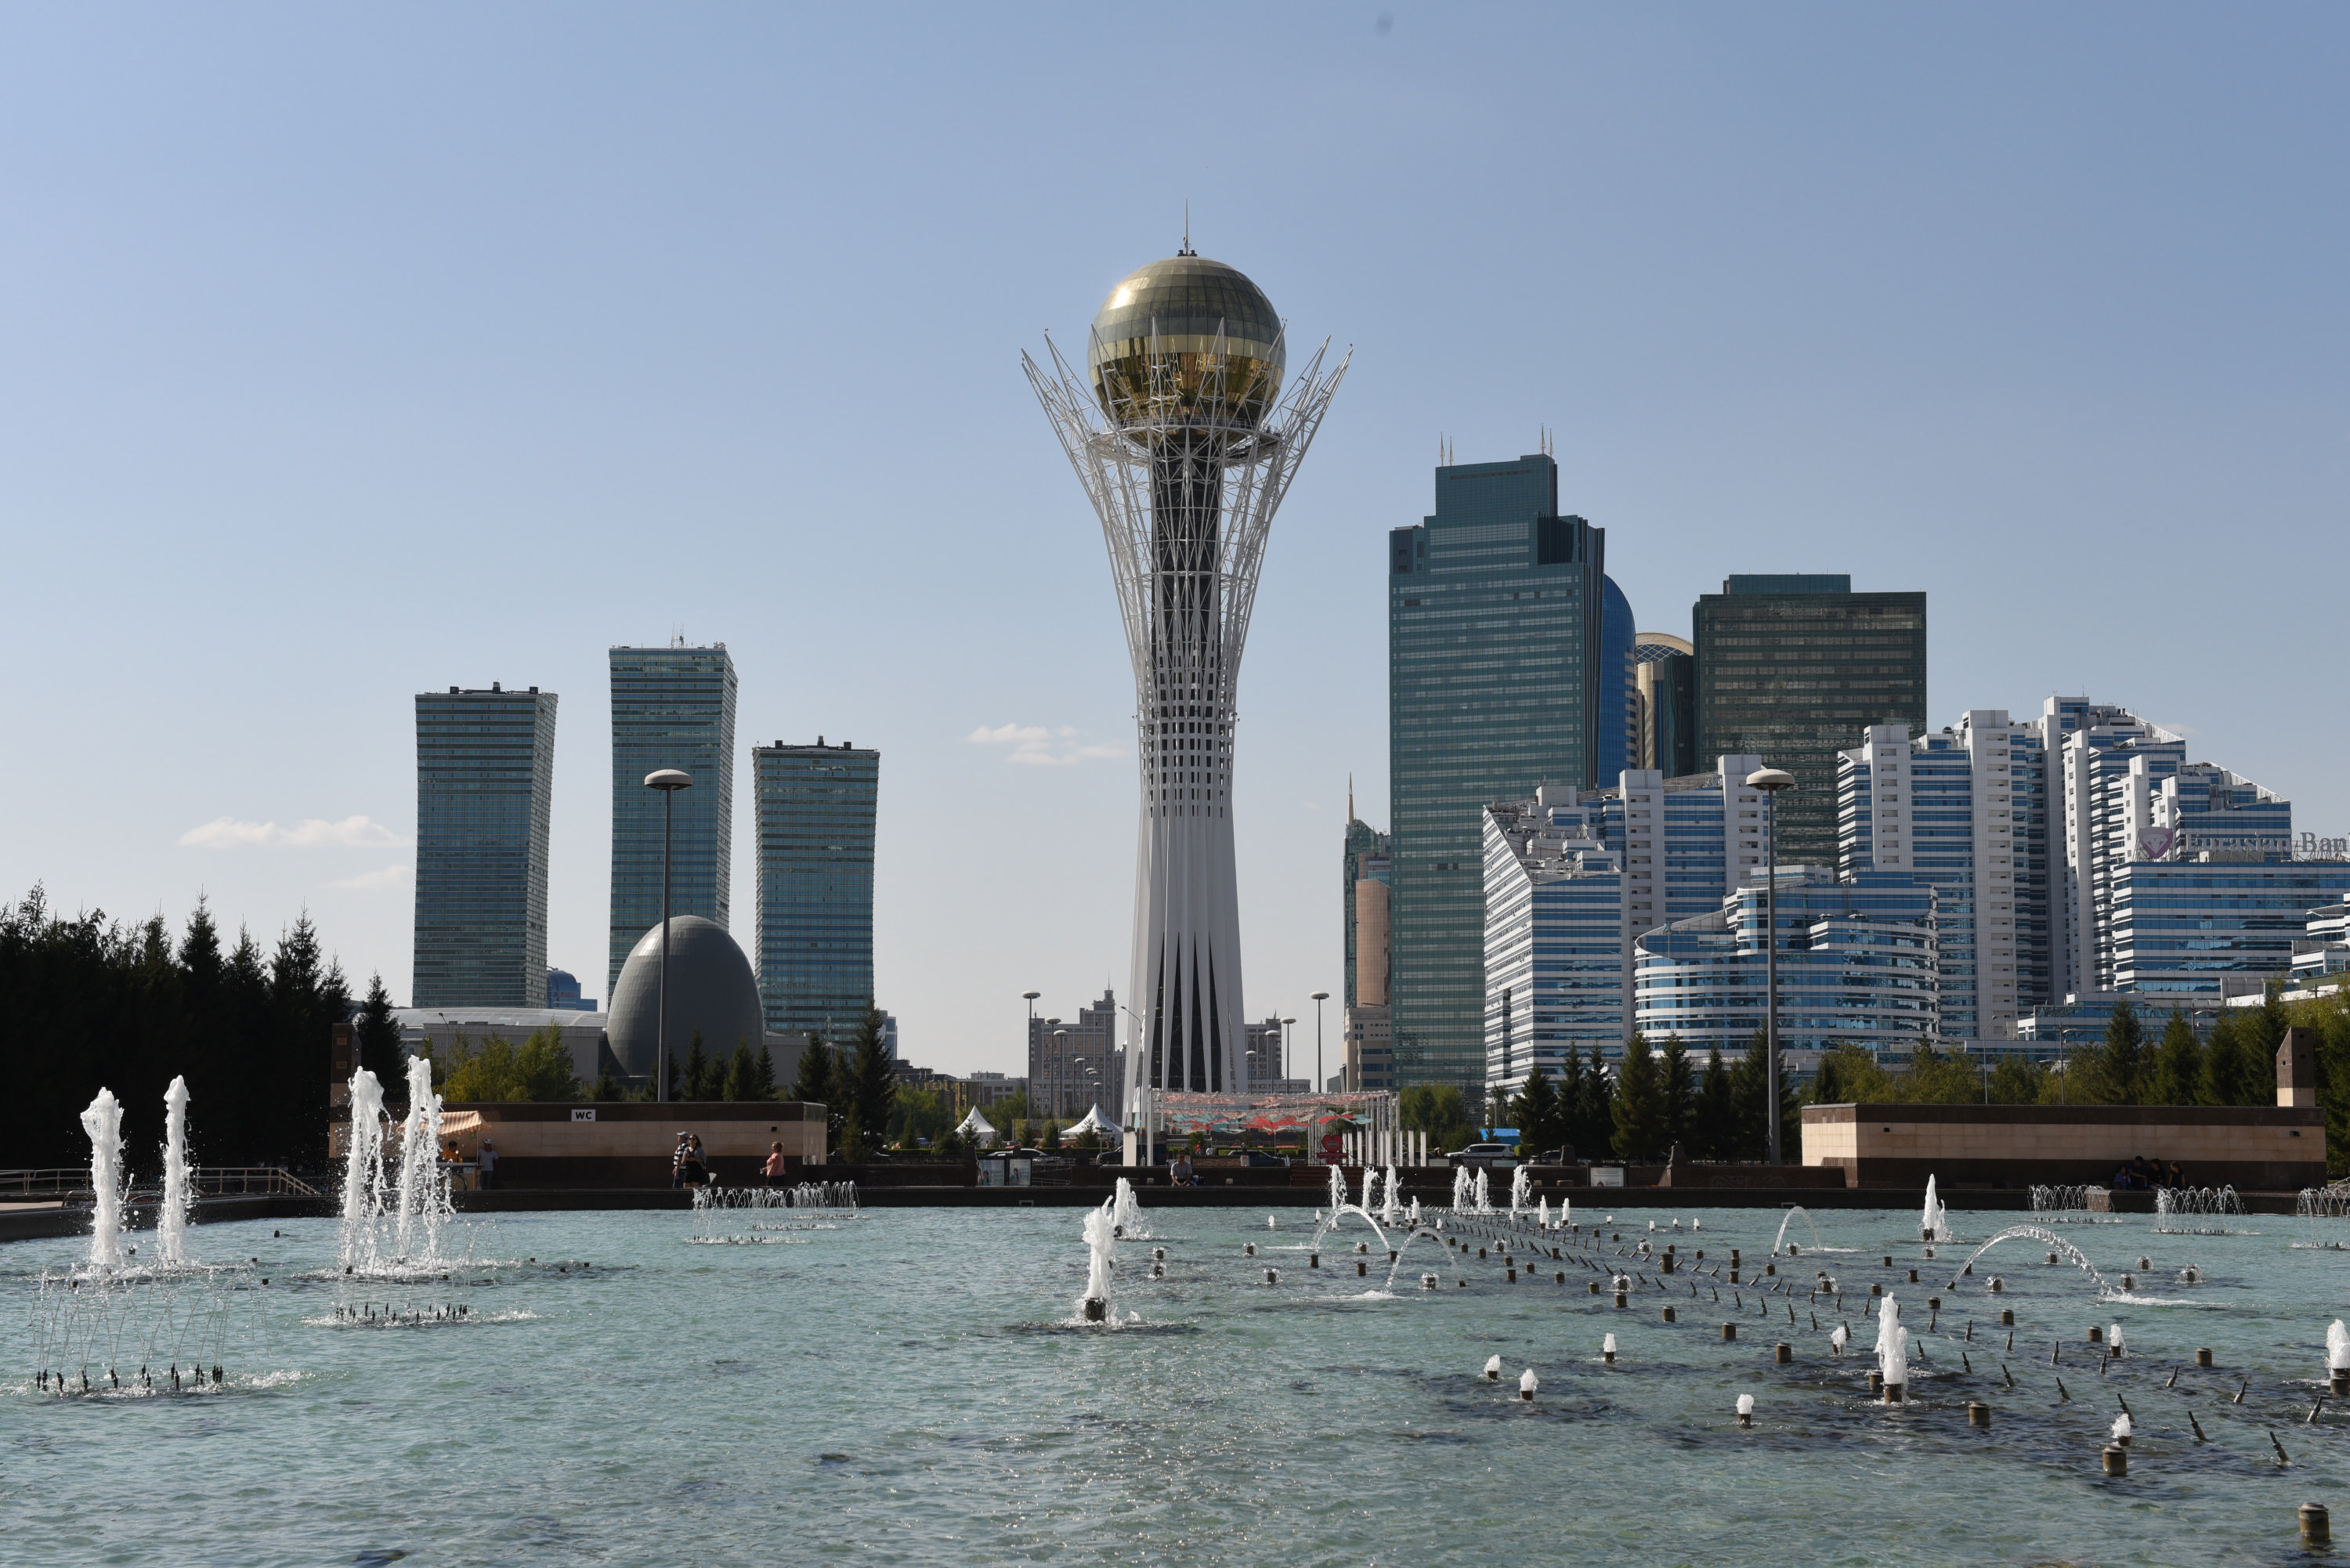 Архитектура или деньги на ветер? Займут ли дорогостоящие объекты Казахстана место в истории? 